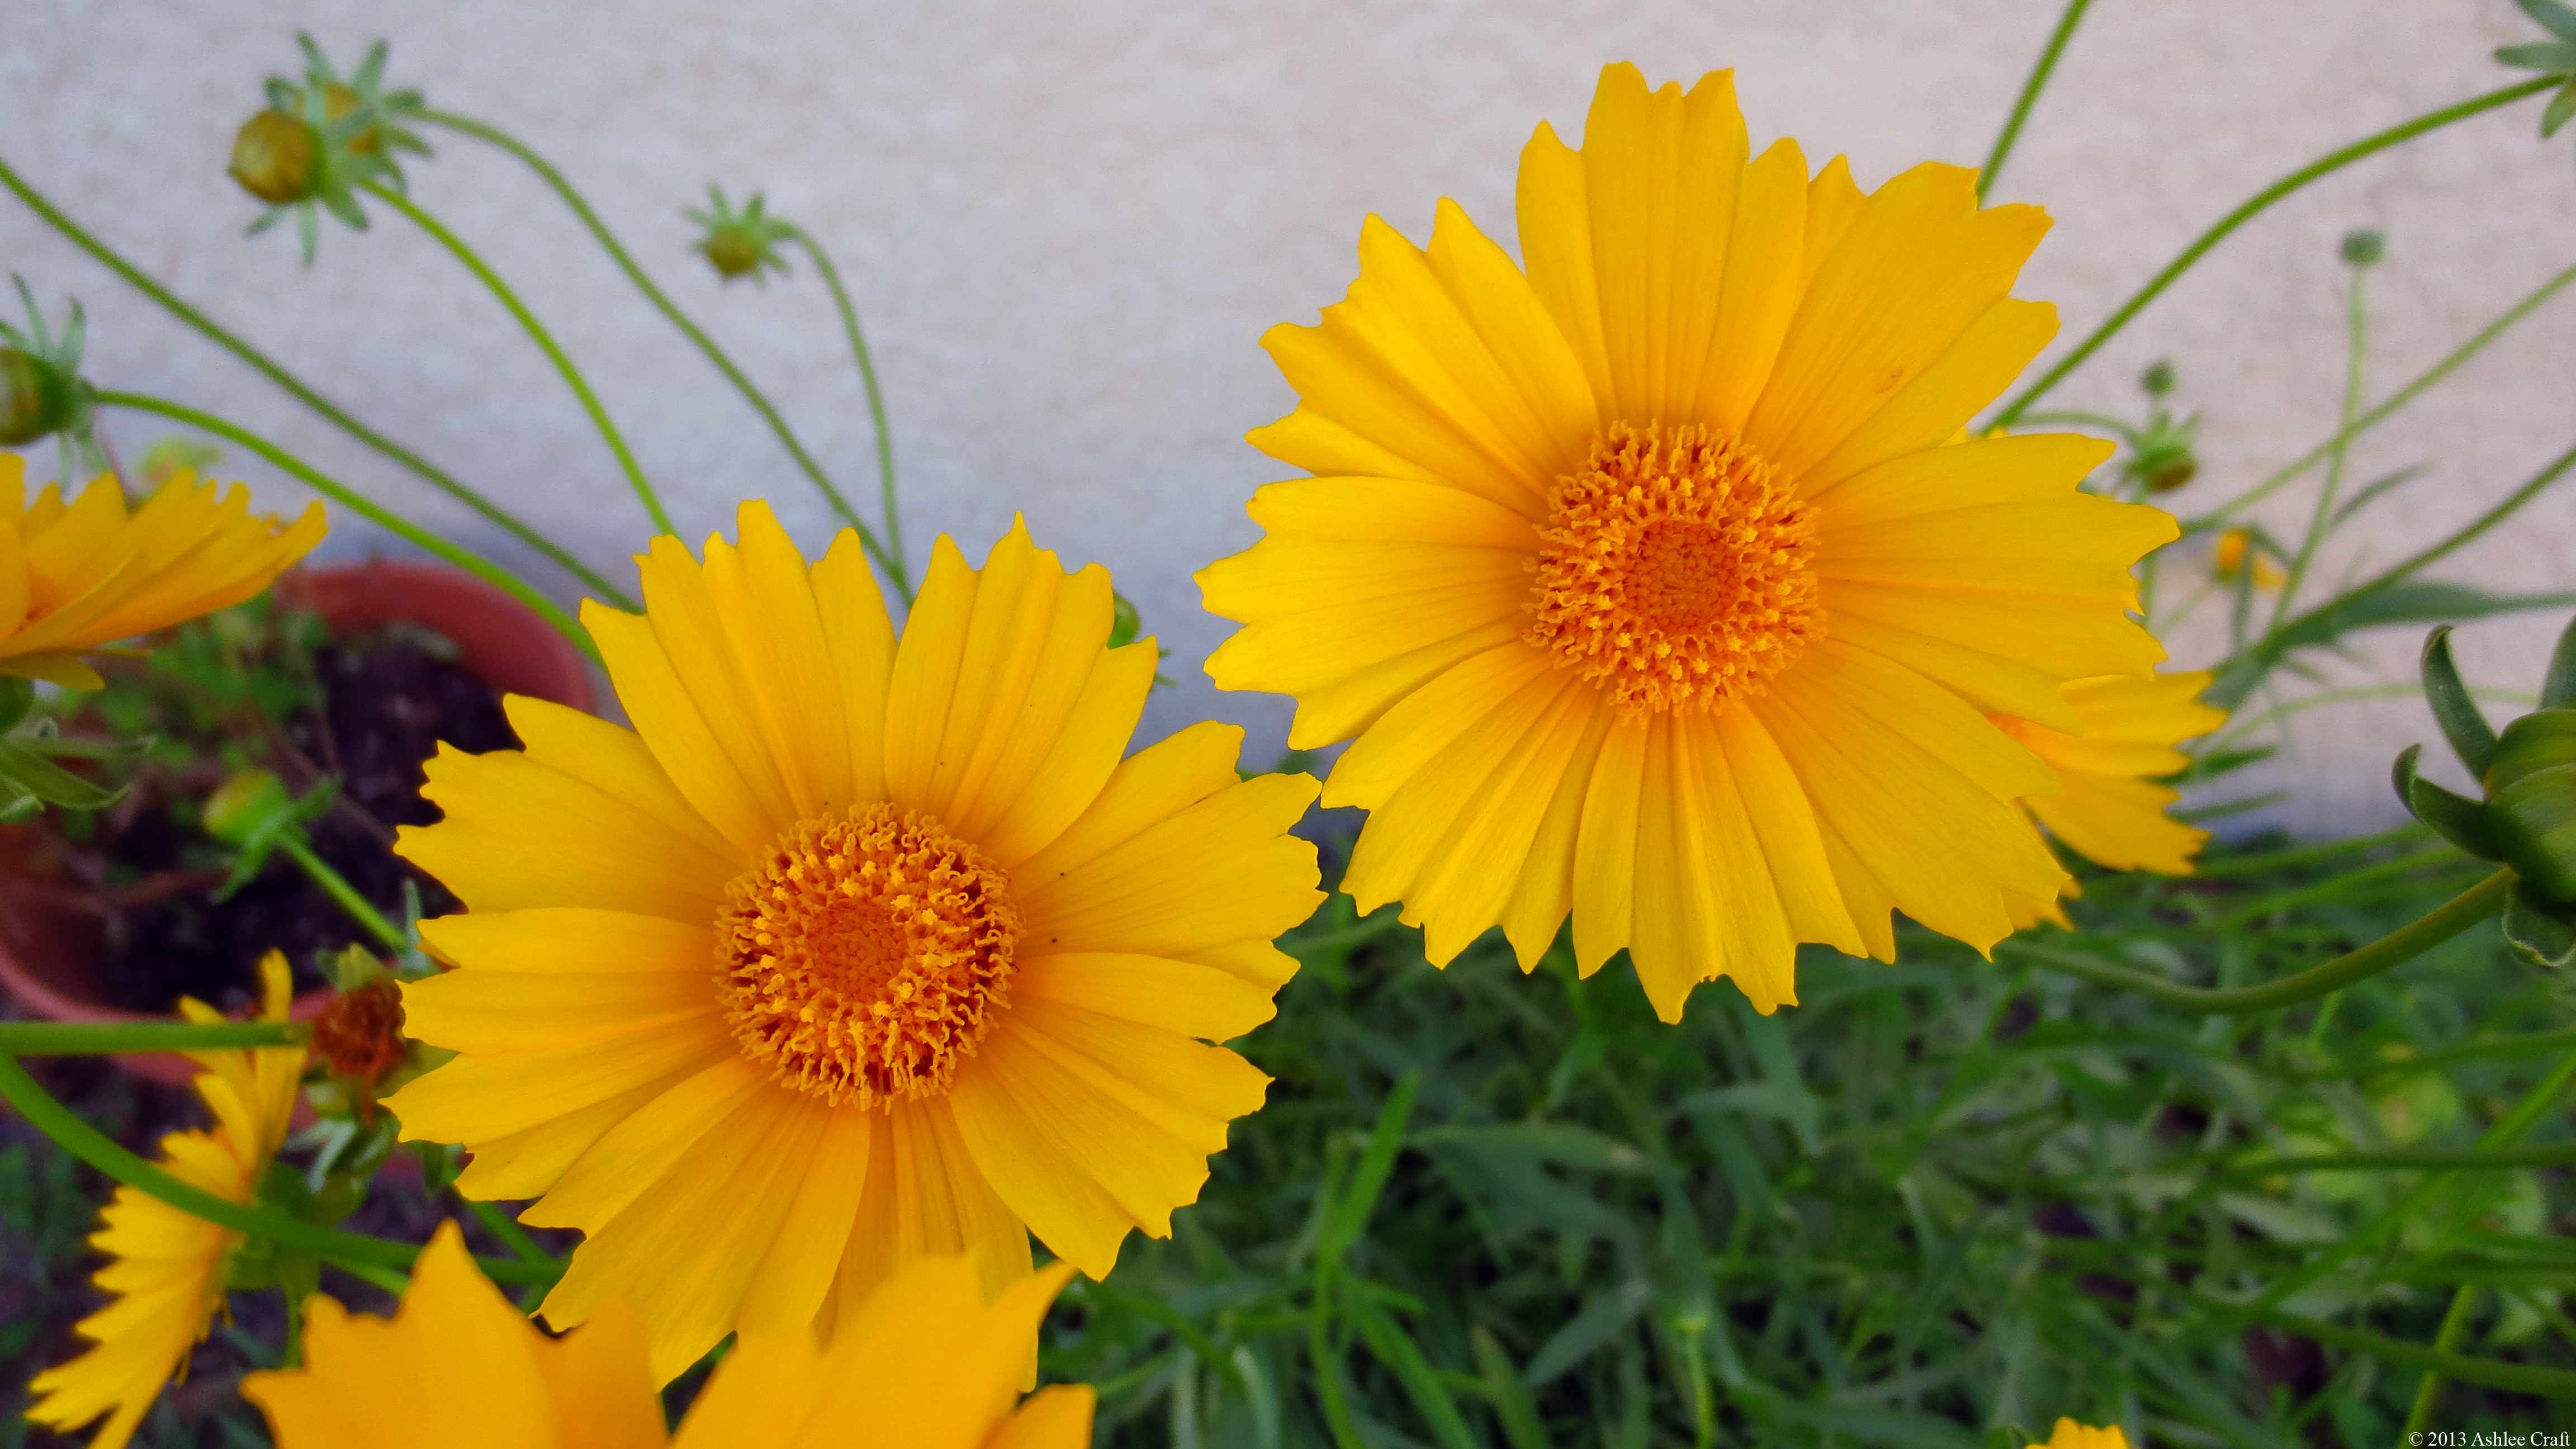 yellow daisies daisy flower jooinn photography